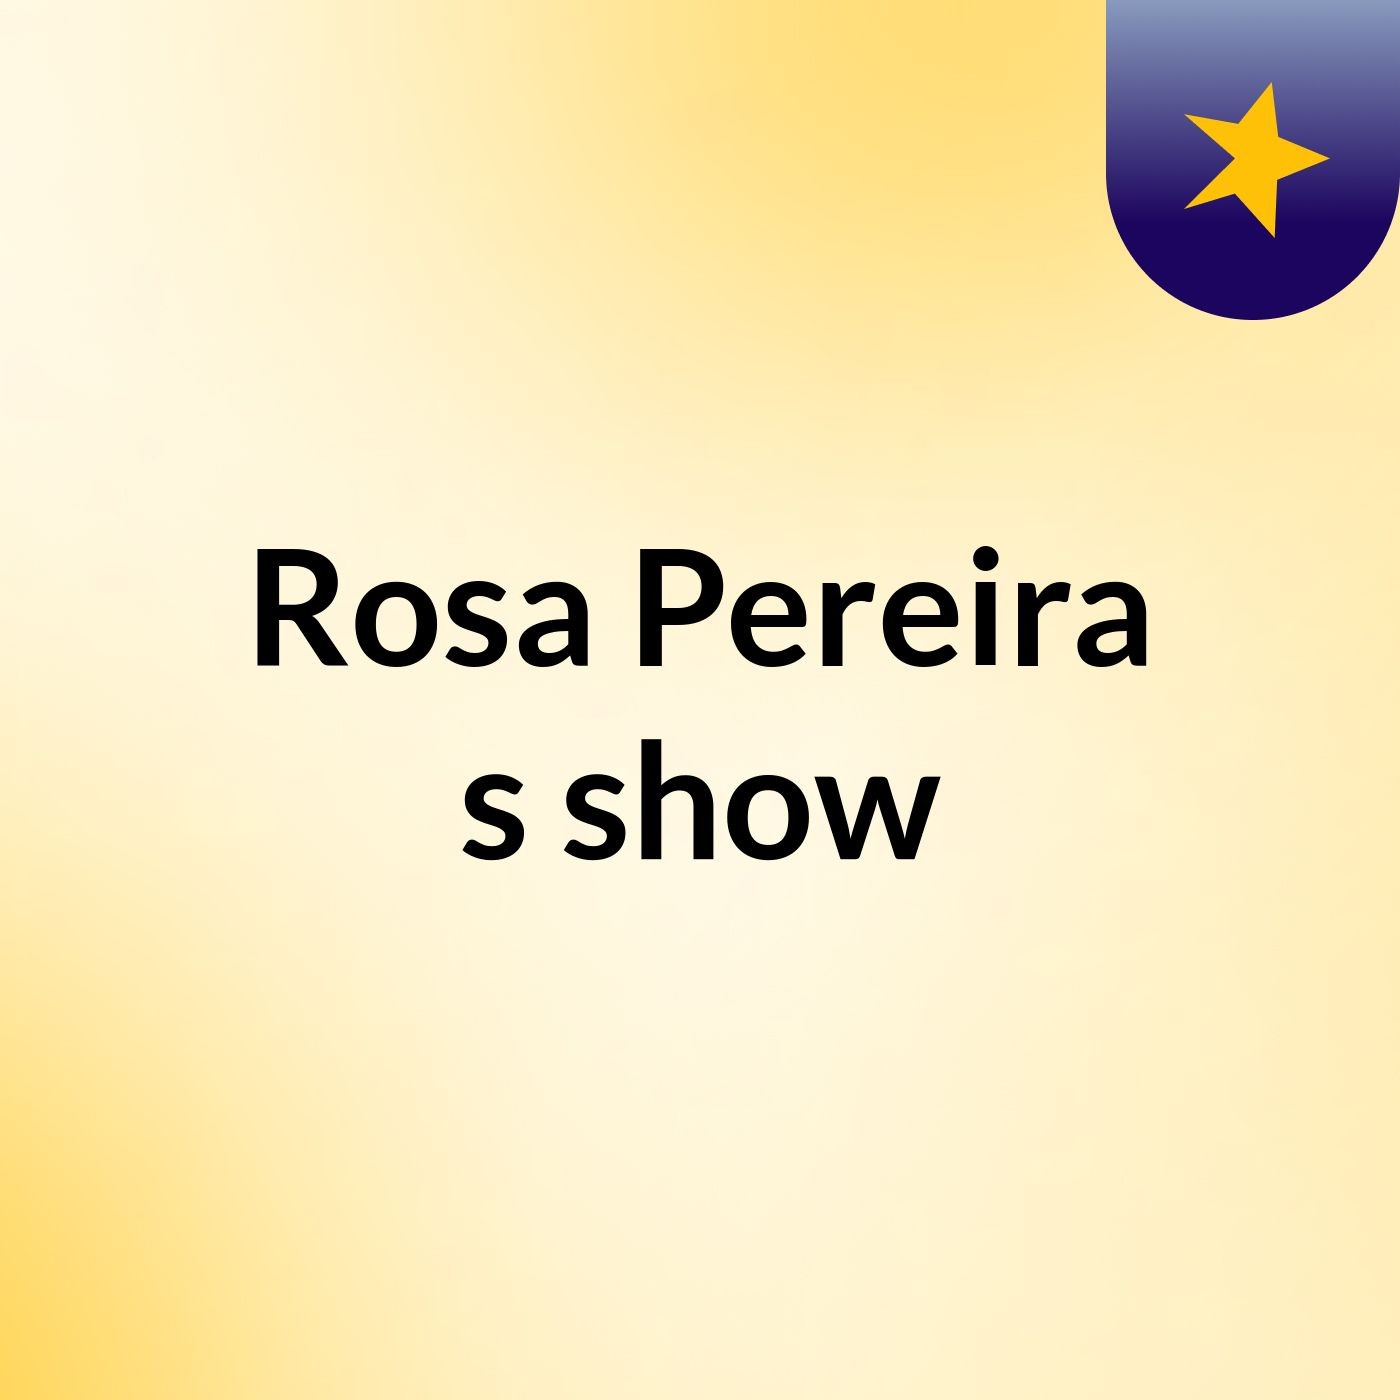 Rosa Pereira's show